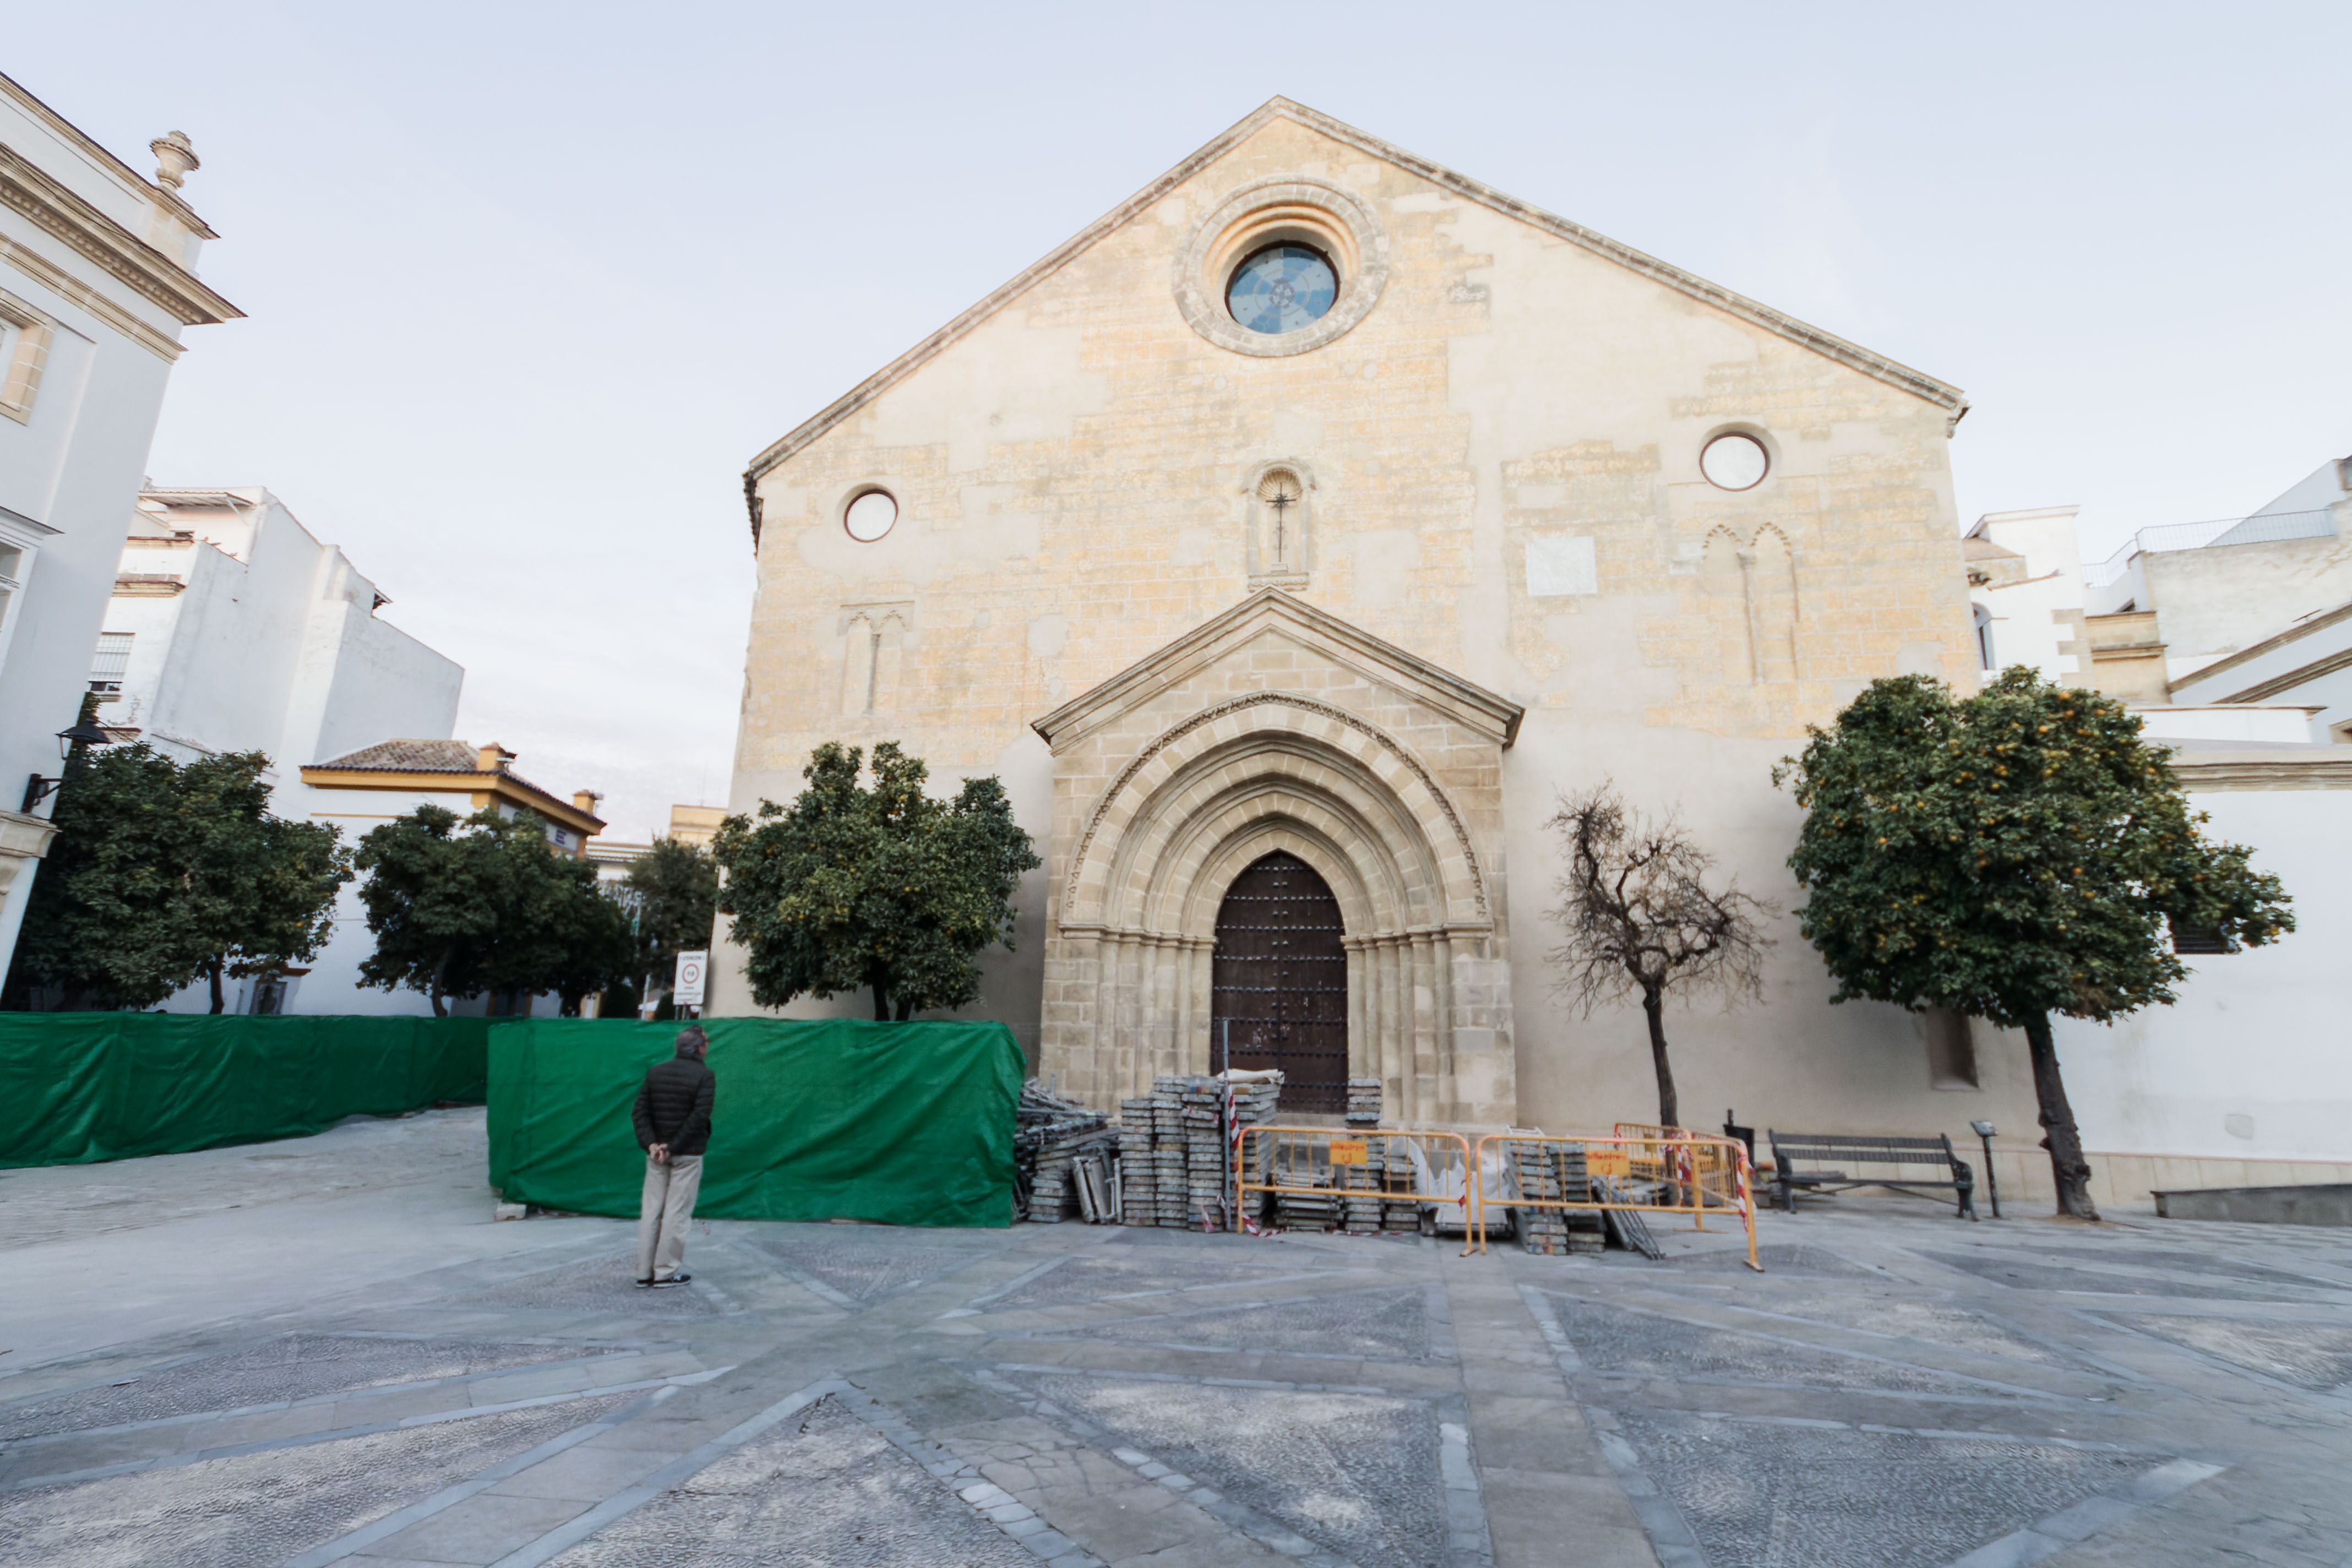 Imagen reciente de la Iglesia de san Dionisio tras ser restaurada la fachada.